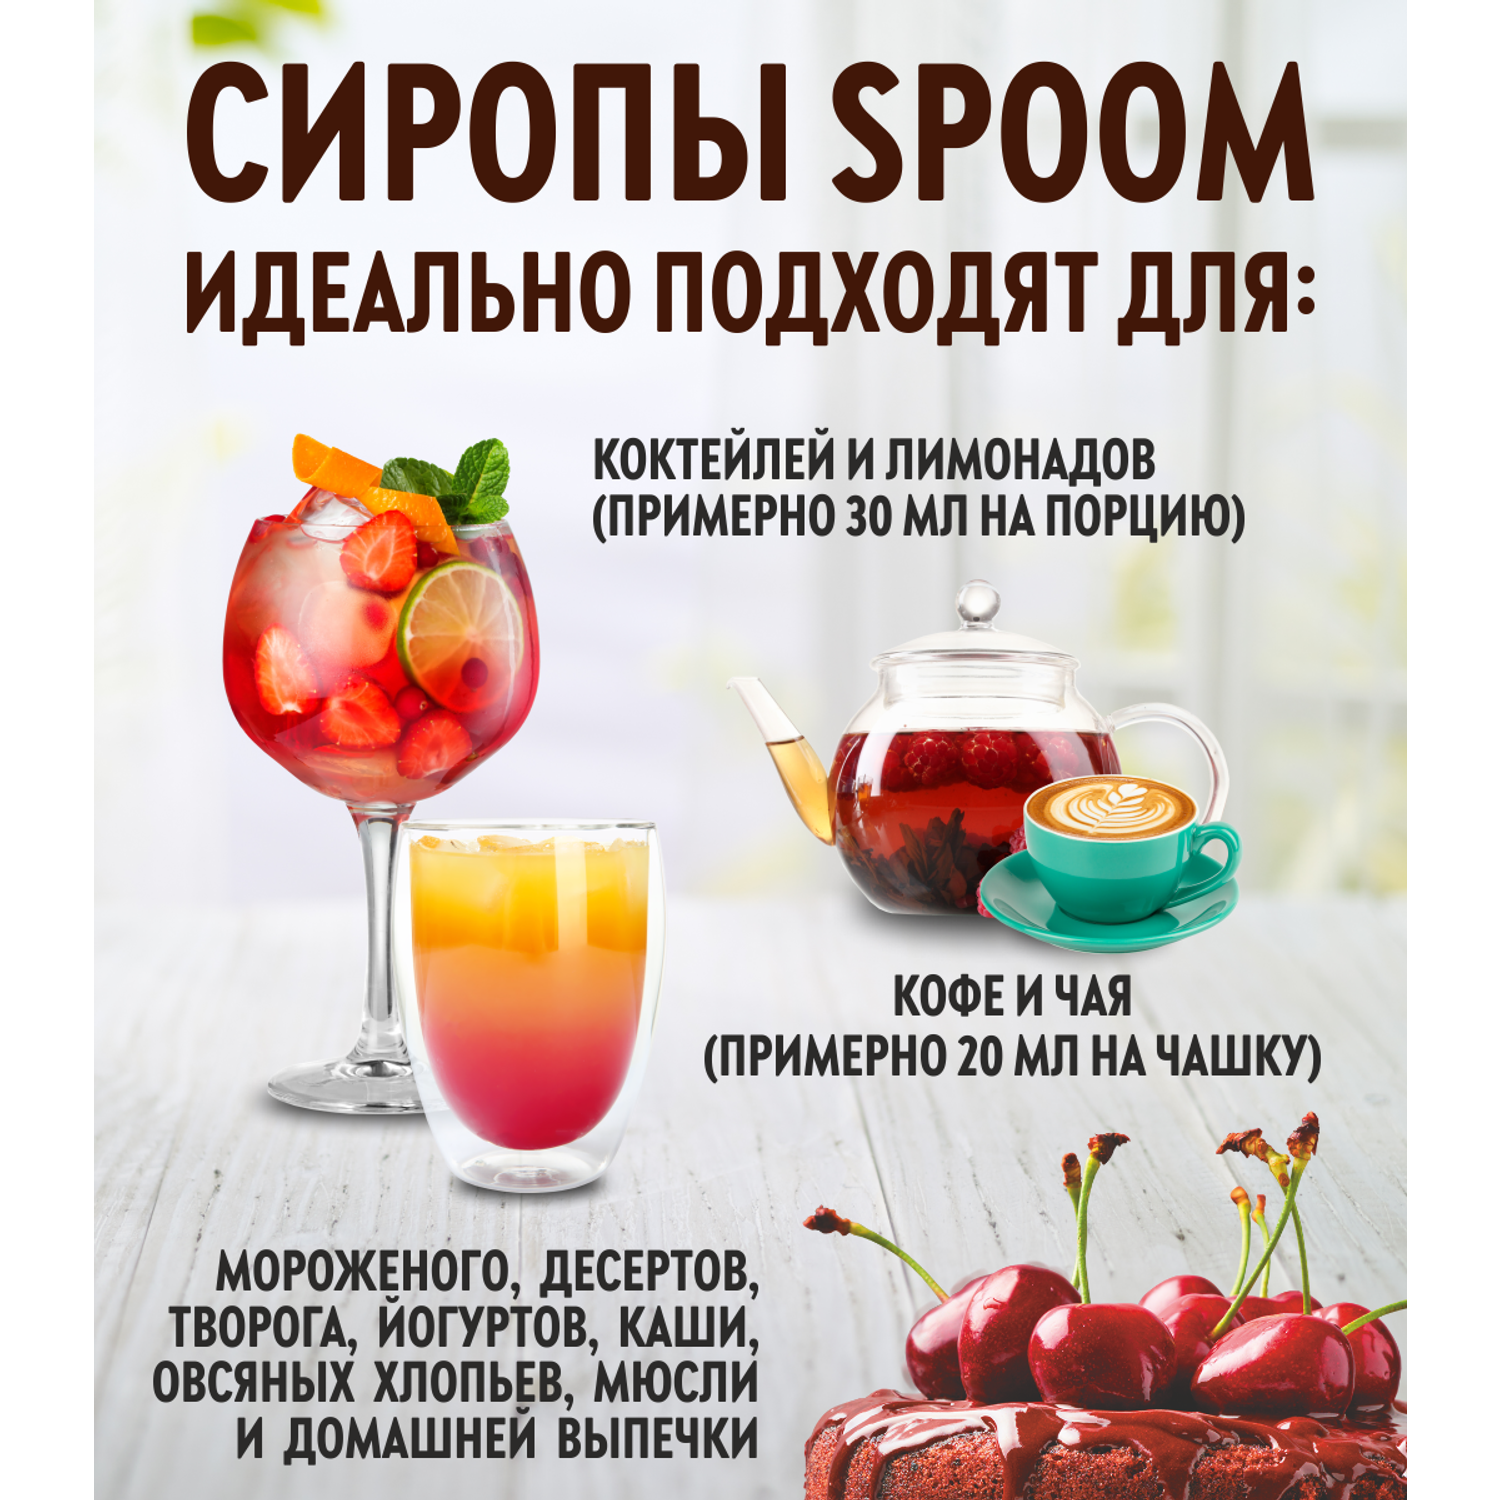 Сироп SPOOM Ваниль Мадагаскарская 1л для кофе коктейлей и десертов - фото 2